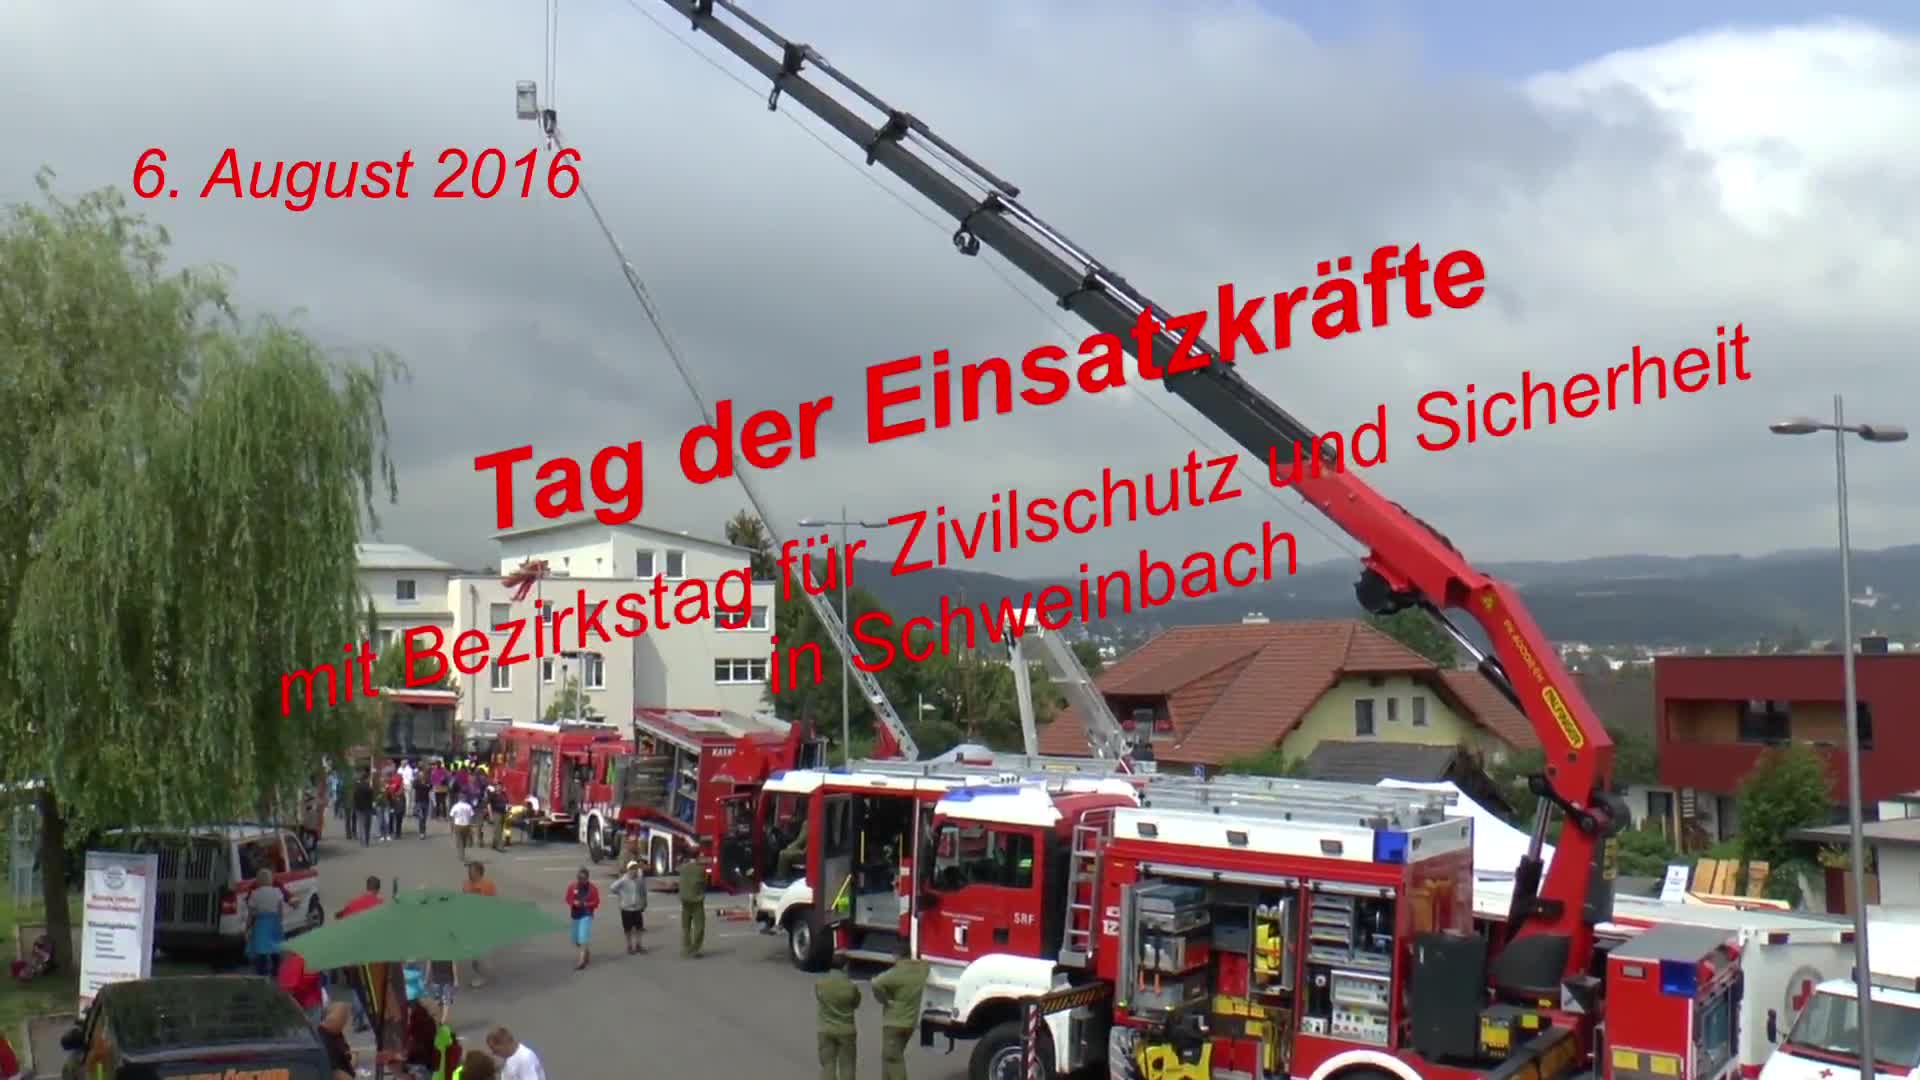 Tag der Einsatzkräfte  in Schweinbach 2016, Teil 1